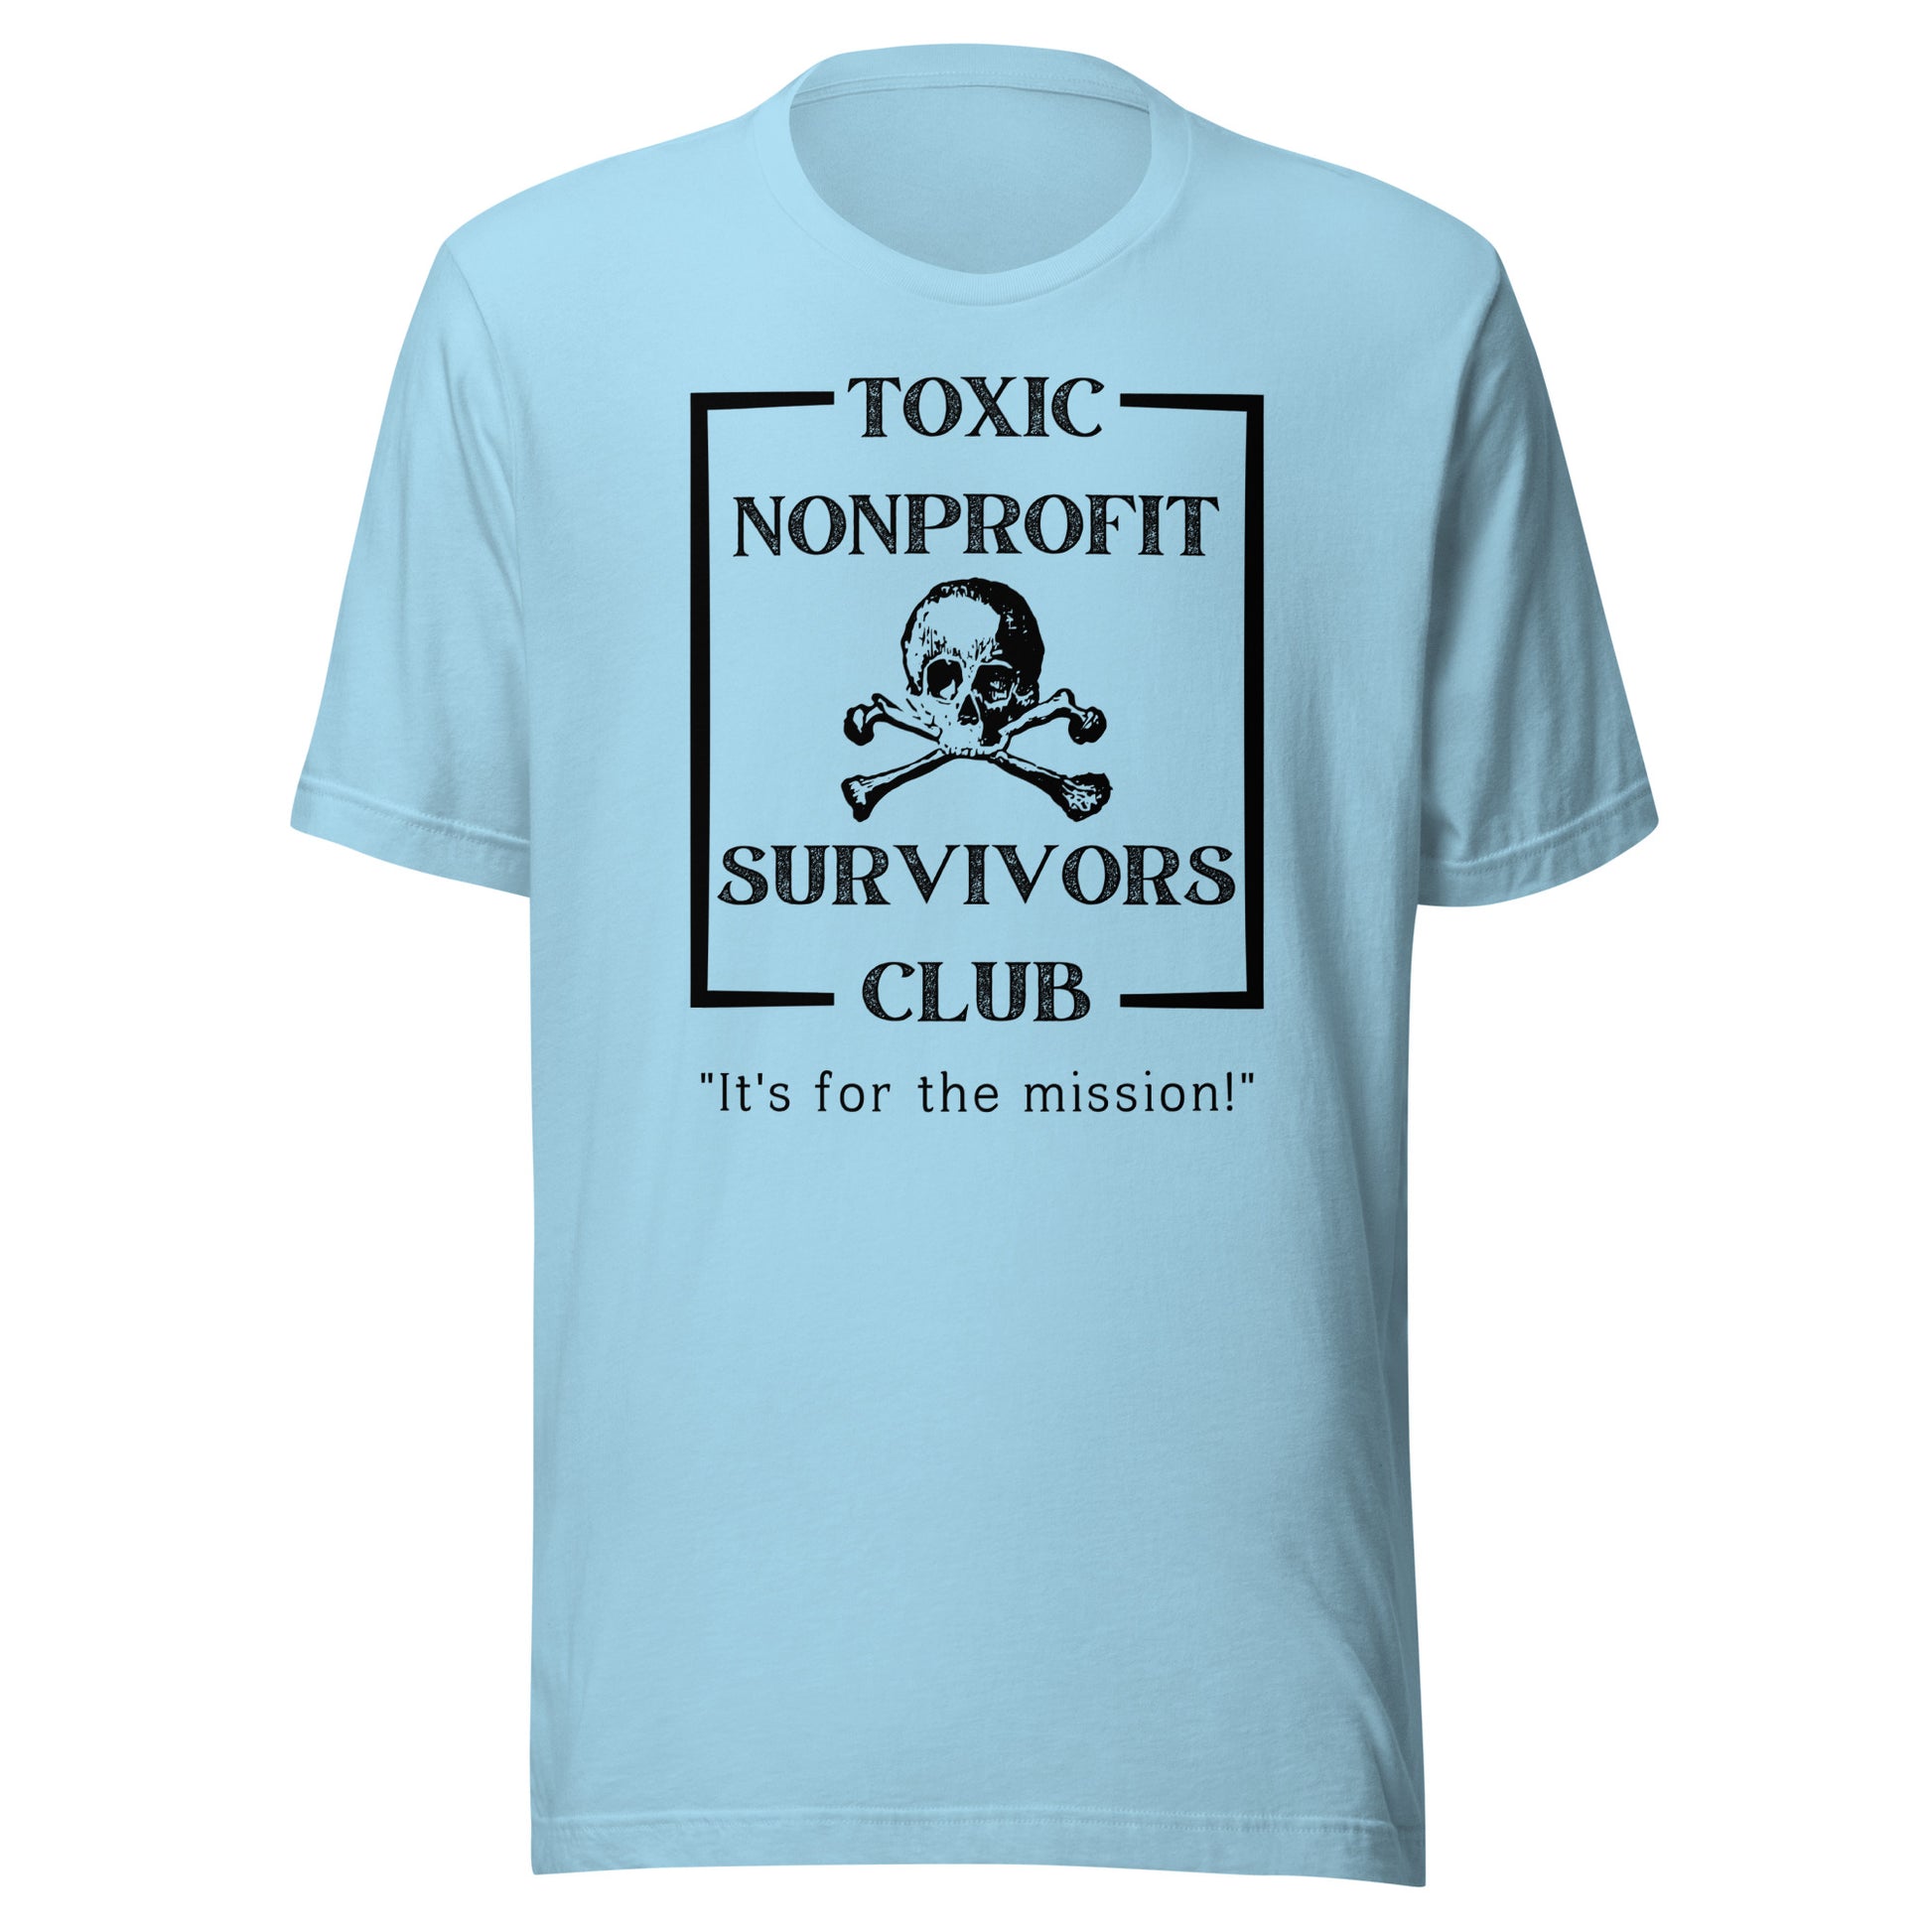 Club Toxic